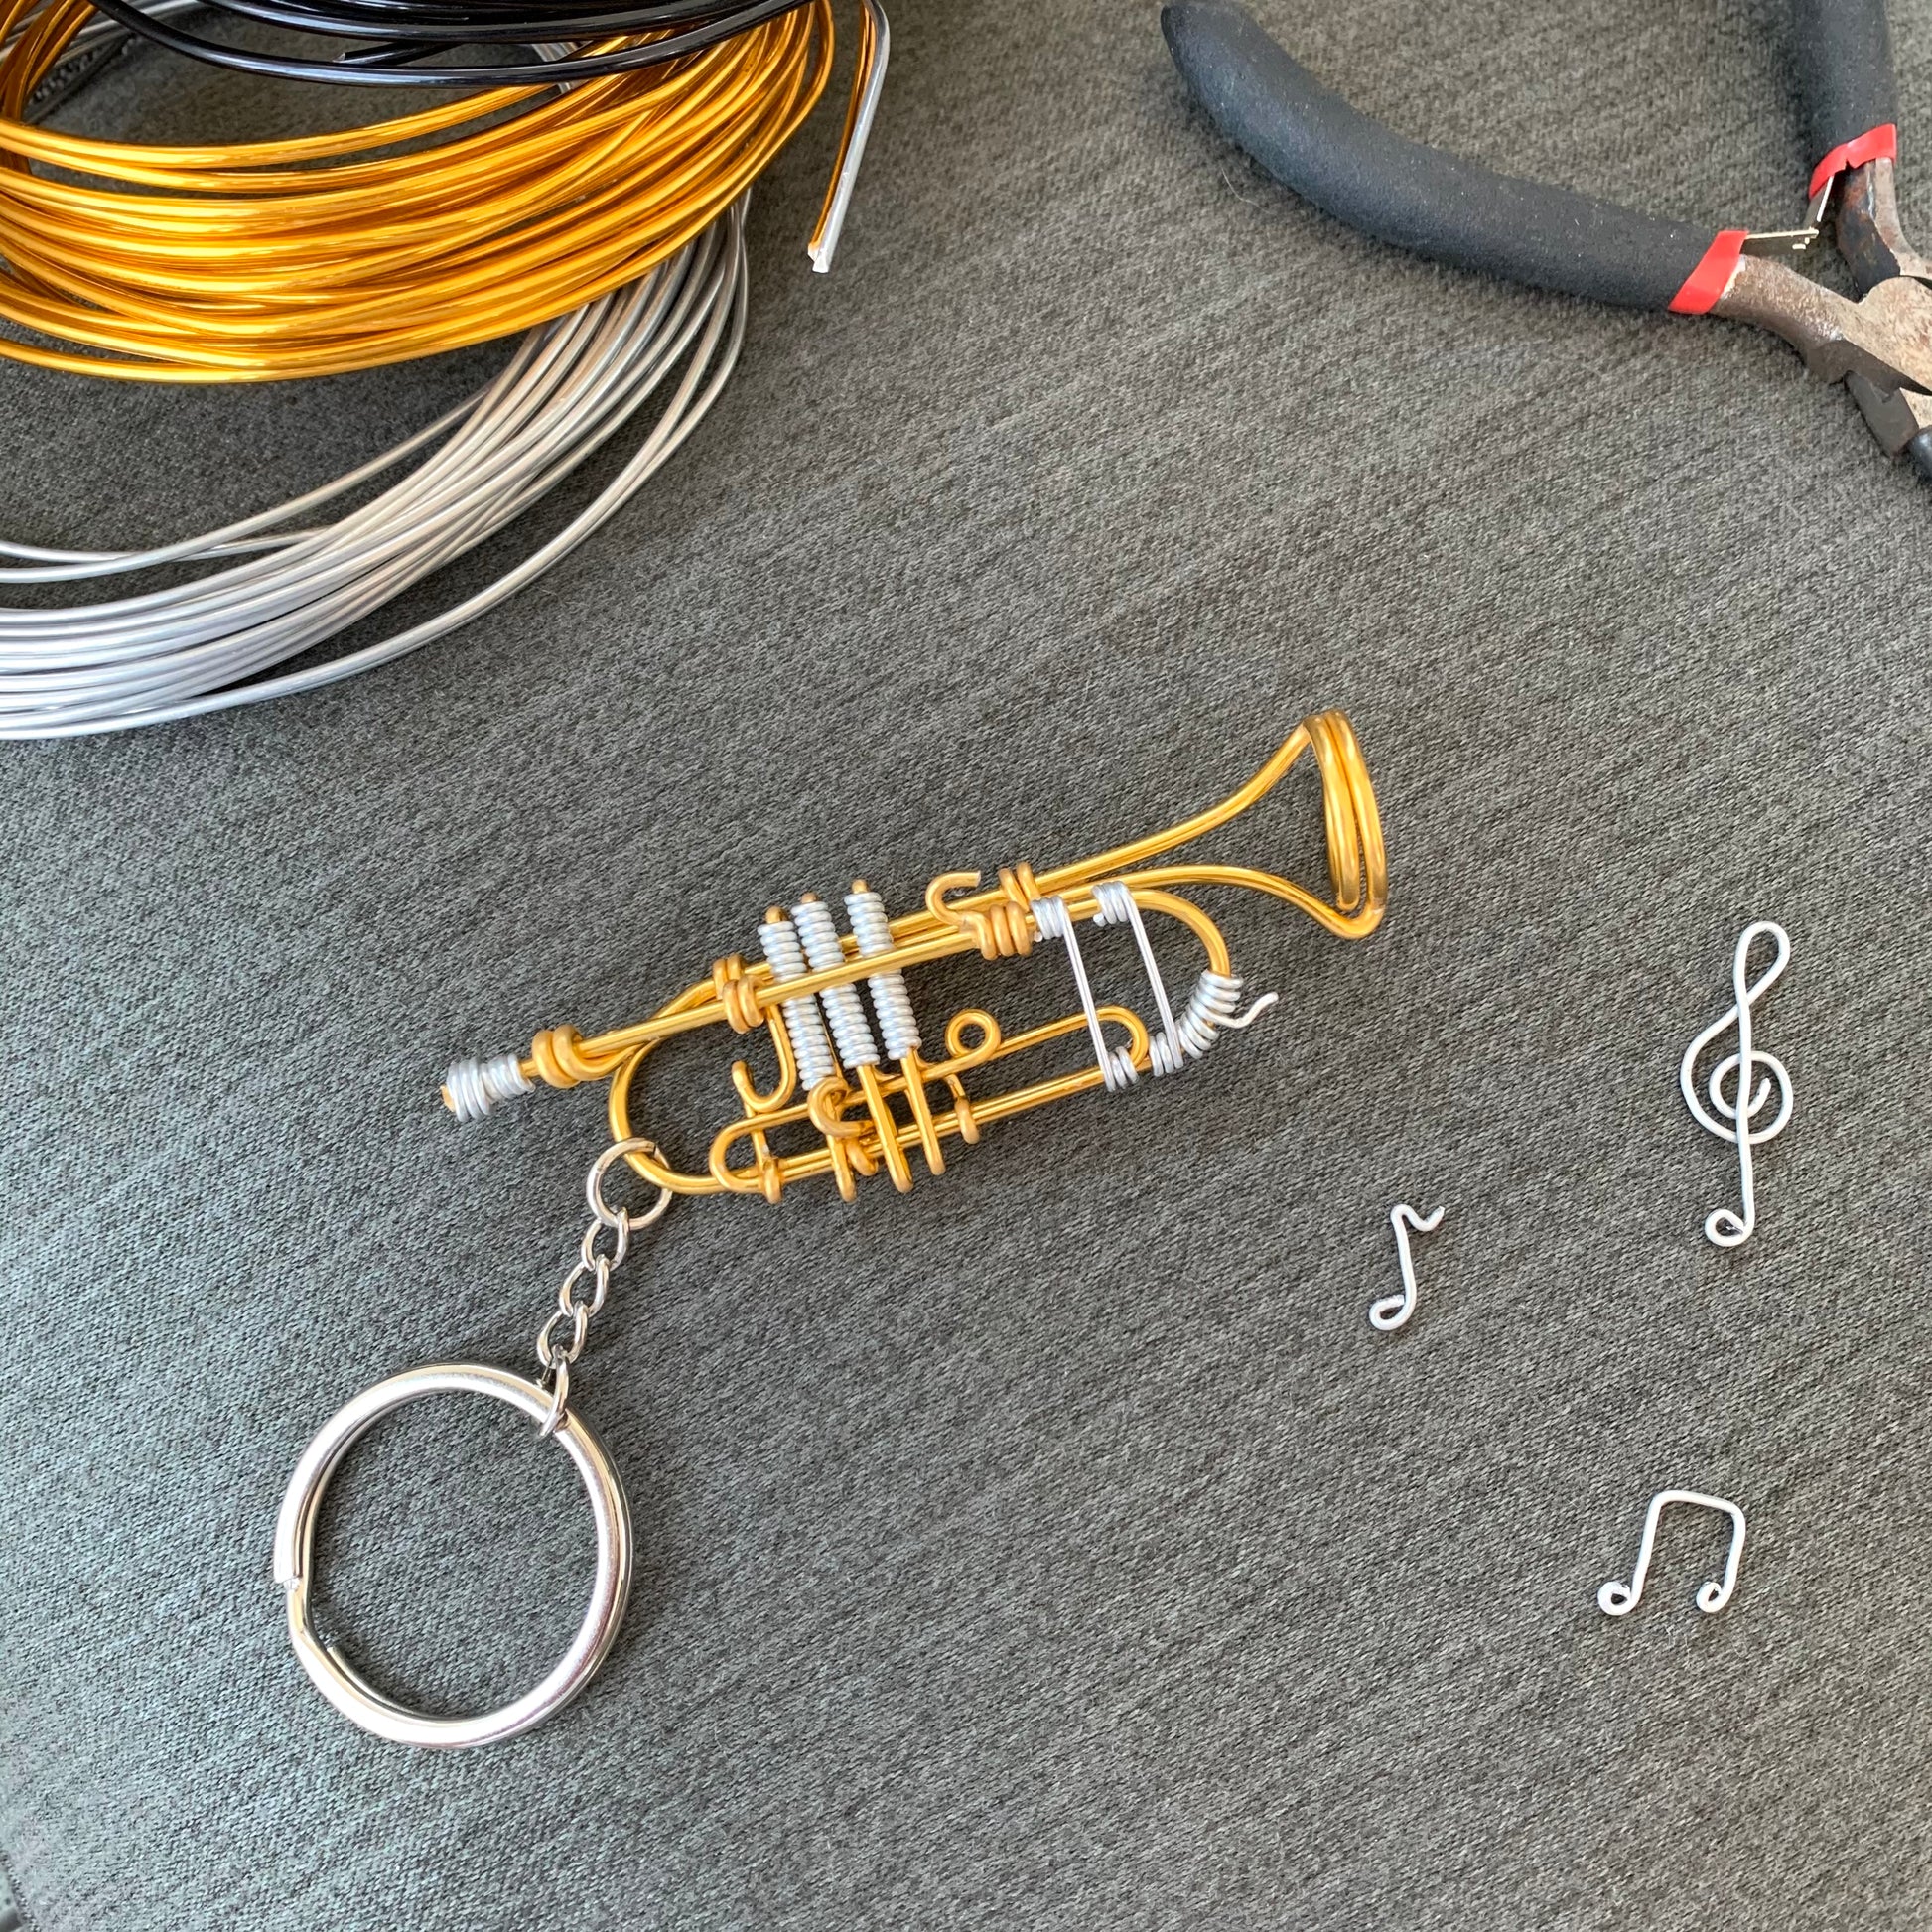 Trumpet Wire Art Instrument Keychain – KGH Music Group